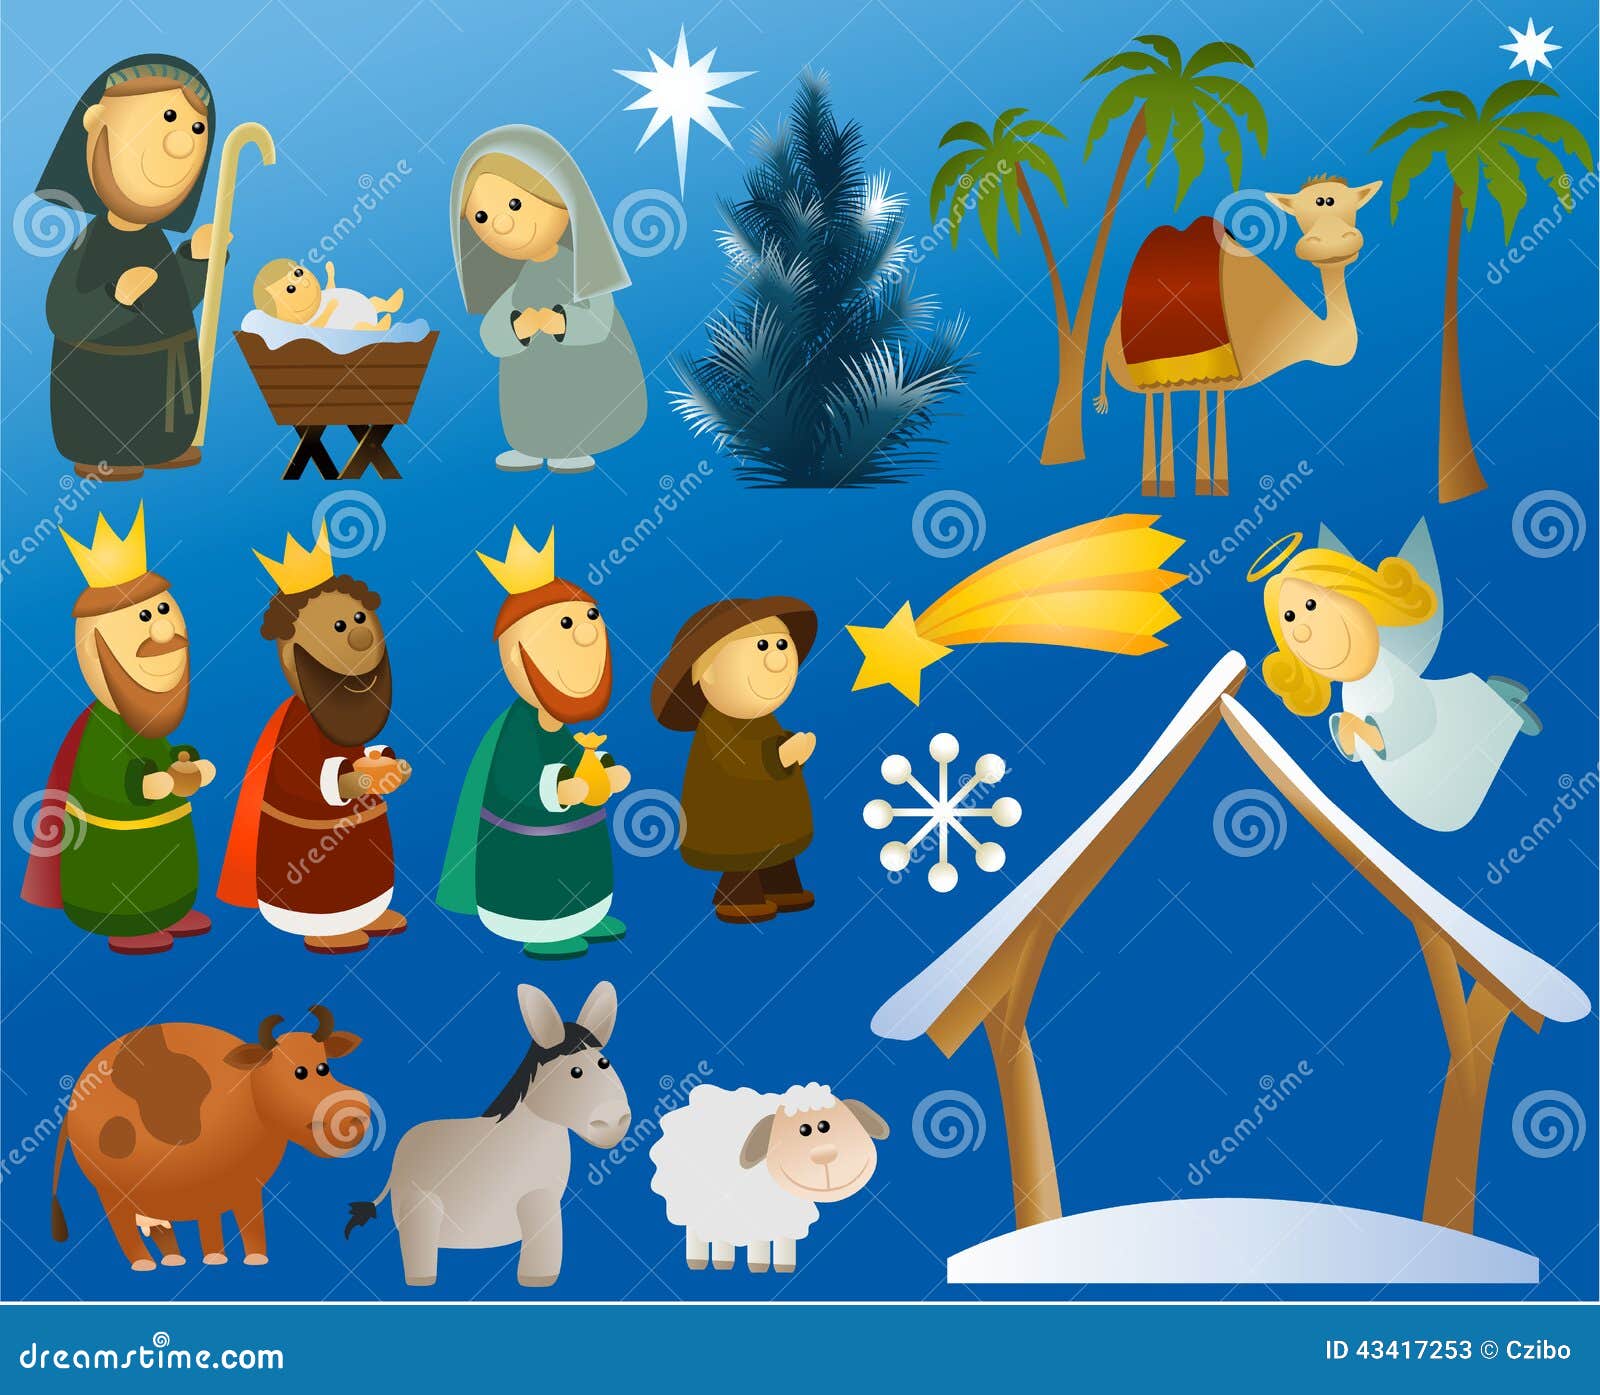 free cartoon nativity clipart - photo #50